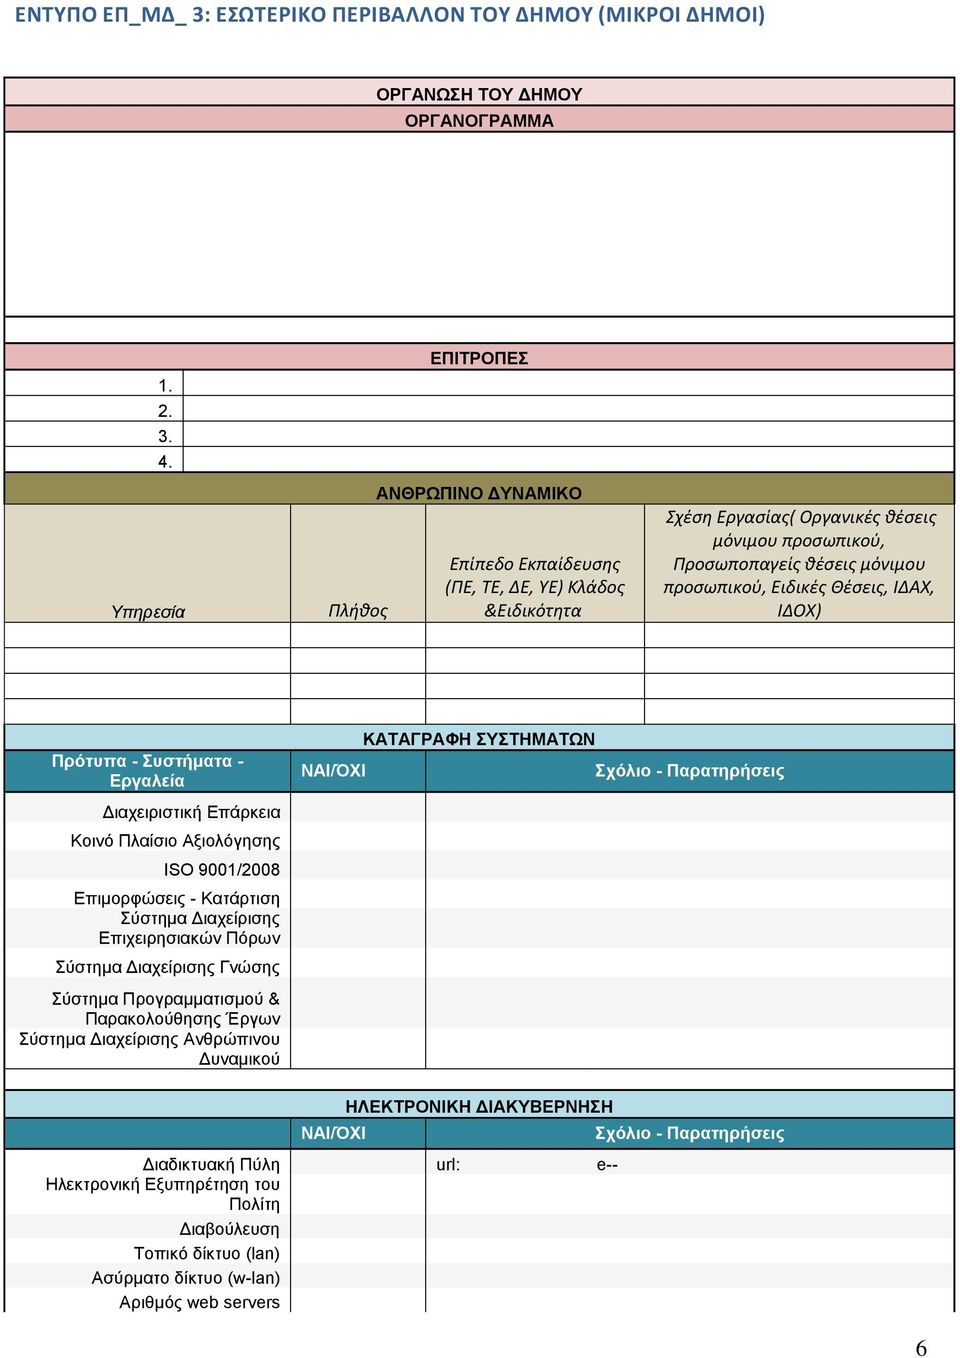 Ειδικές Θέσεις, ΙΔΑΧ, ΙΔΟΧ) Πρότυπα - Συστήματα - Εργαλεία ΝΑΙ/ΌΧΙ ΚΑΤΑΓΡΑΦΗ ΣΥΣΤΗΜΑΤΩΝ Σχόλιο - Παρατηρήσεις Διαχειριστική Επάρκεια Κοινό Πλαίσιο Αξιολόγησης ISO 9001/2008 Επιμορφώσεις - Κατάρτιση